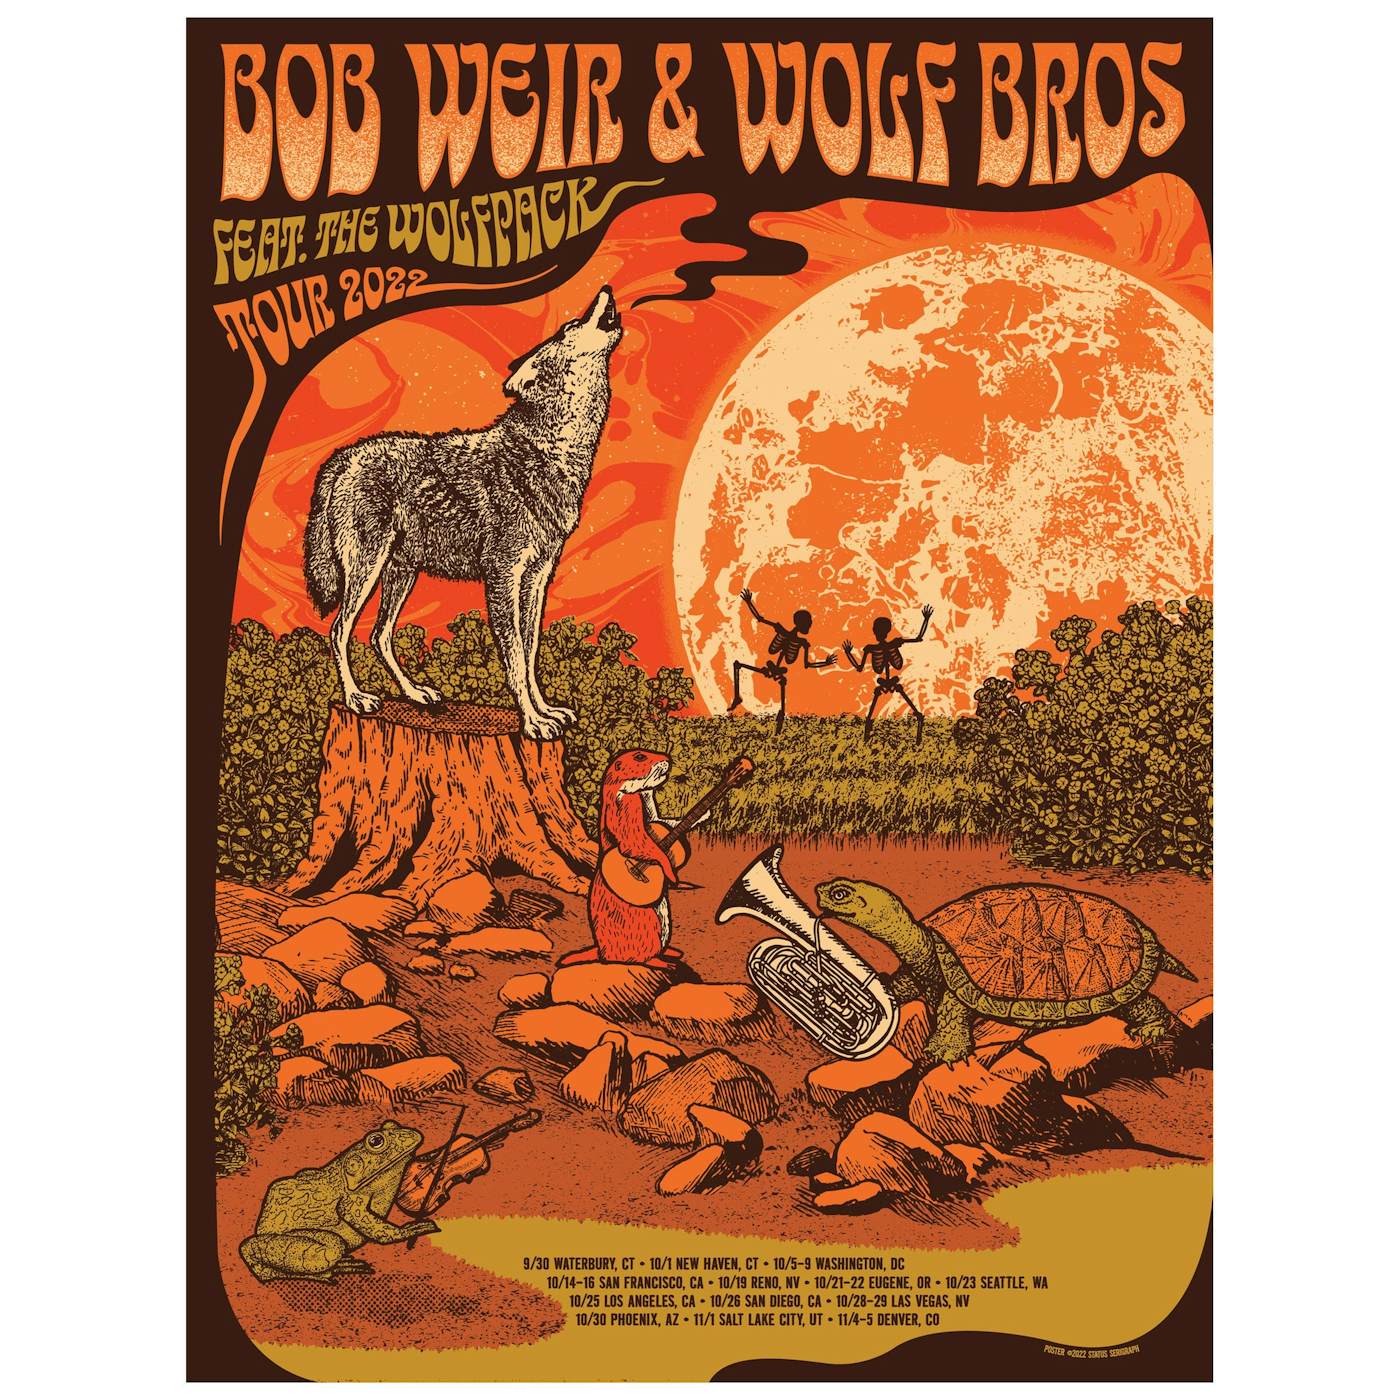 Bob Weir & Wolf Bros 2022 Tour Poster